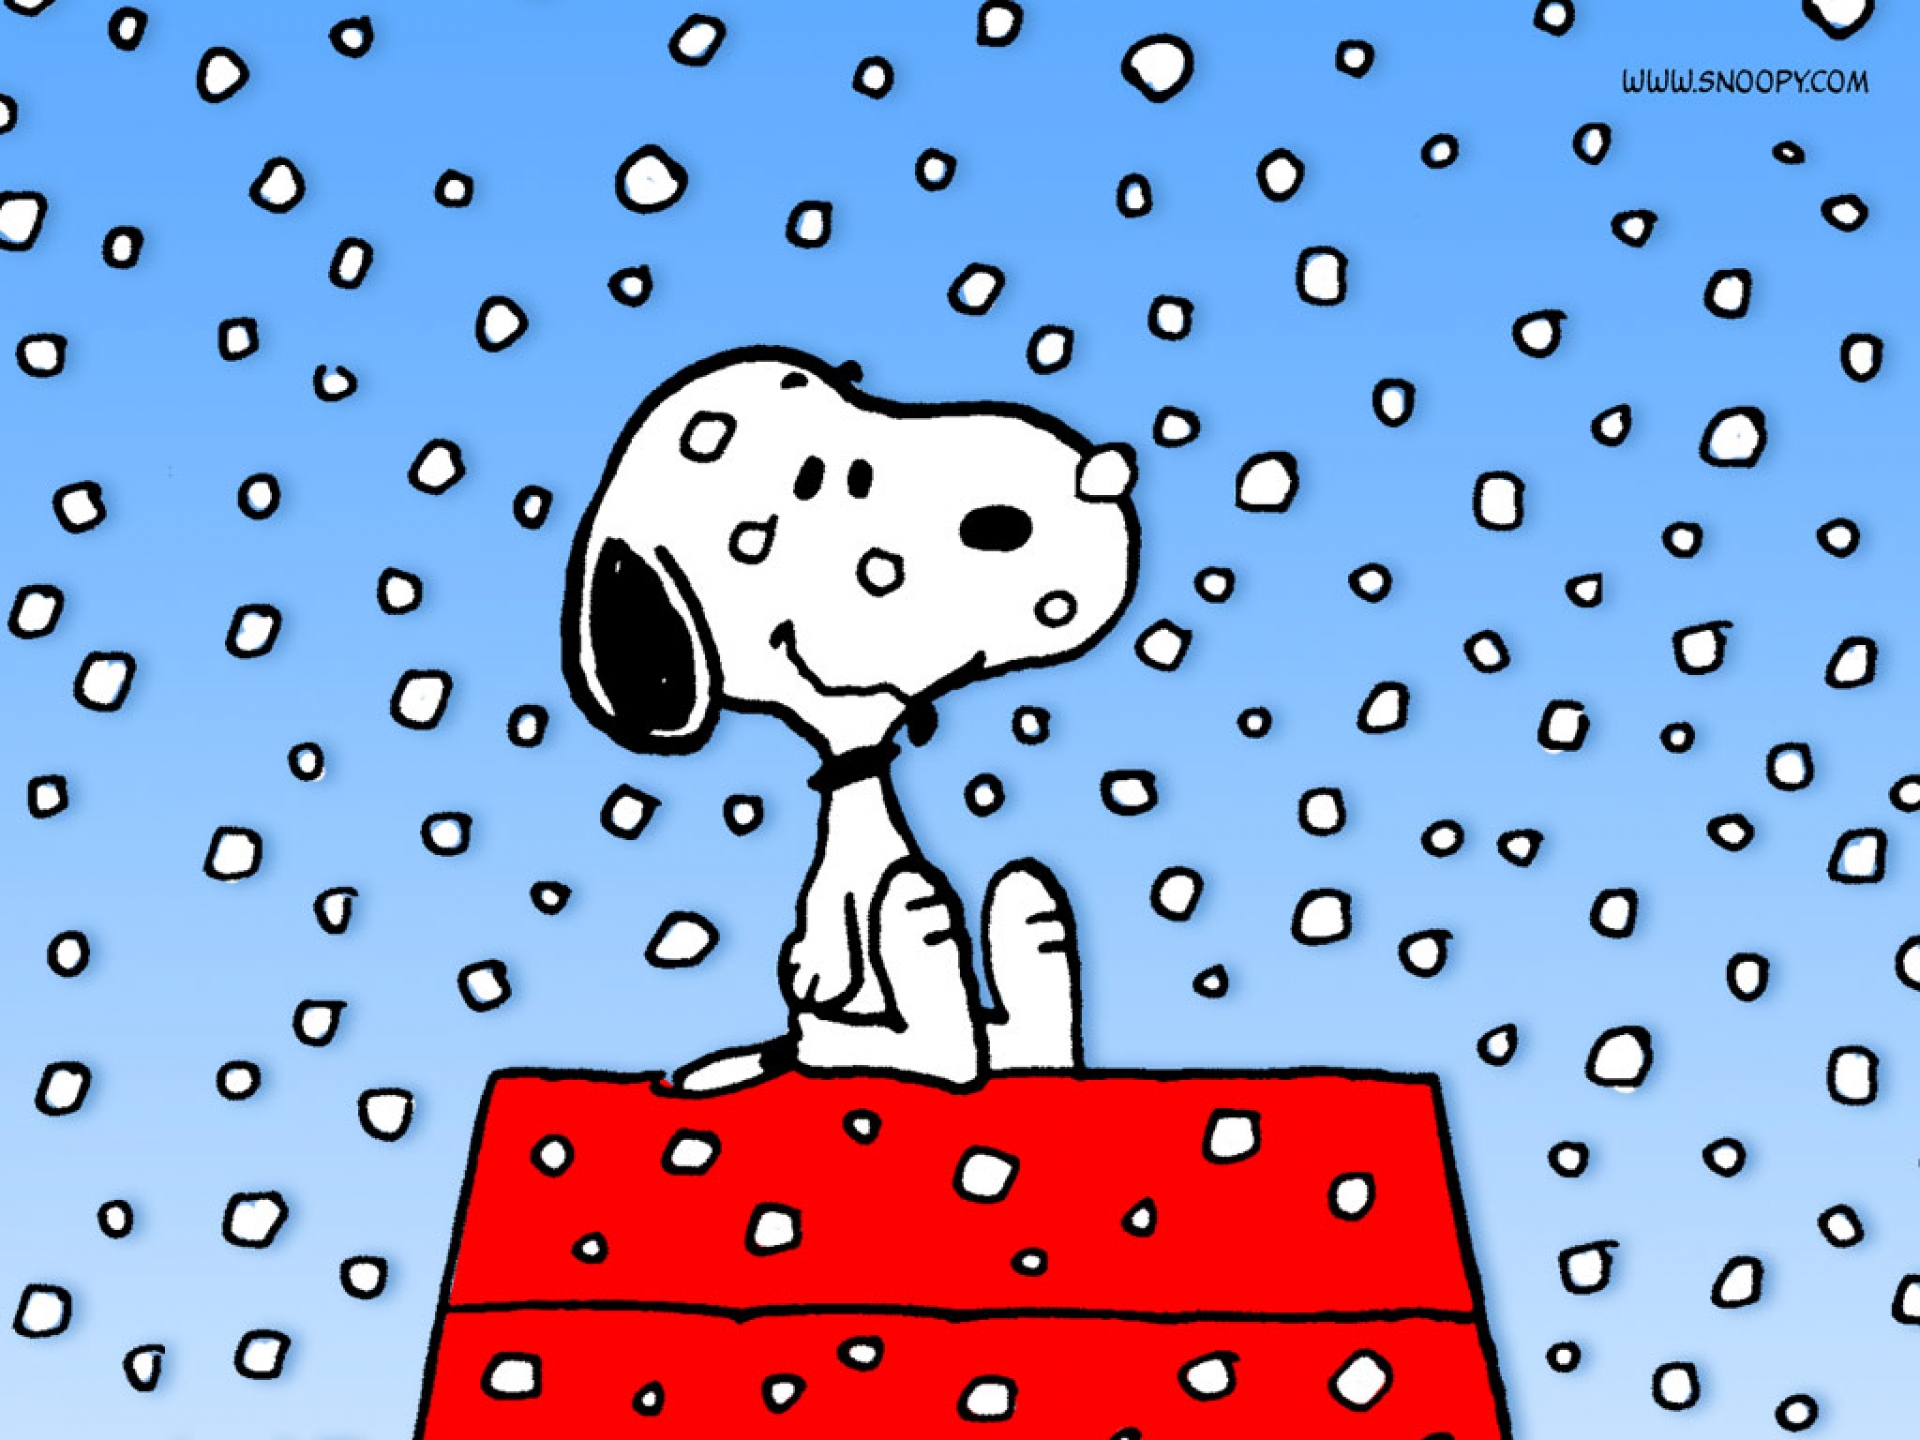 Một nền Snoopy xinh xắn sẽ làm cho khung cảnh Giáng Sinh của bạn thêm phần ấm áp và vui tươi hơn bao giờ hết. Hãy cùng lắng nghe tiếng chuông Giáng Sinh và chiêm ngưỡng bức tranh này nhé!